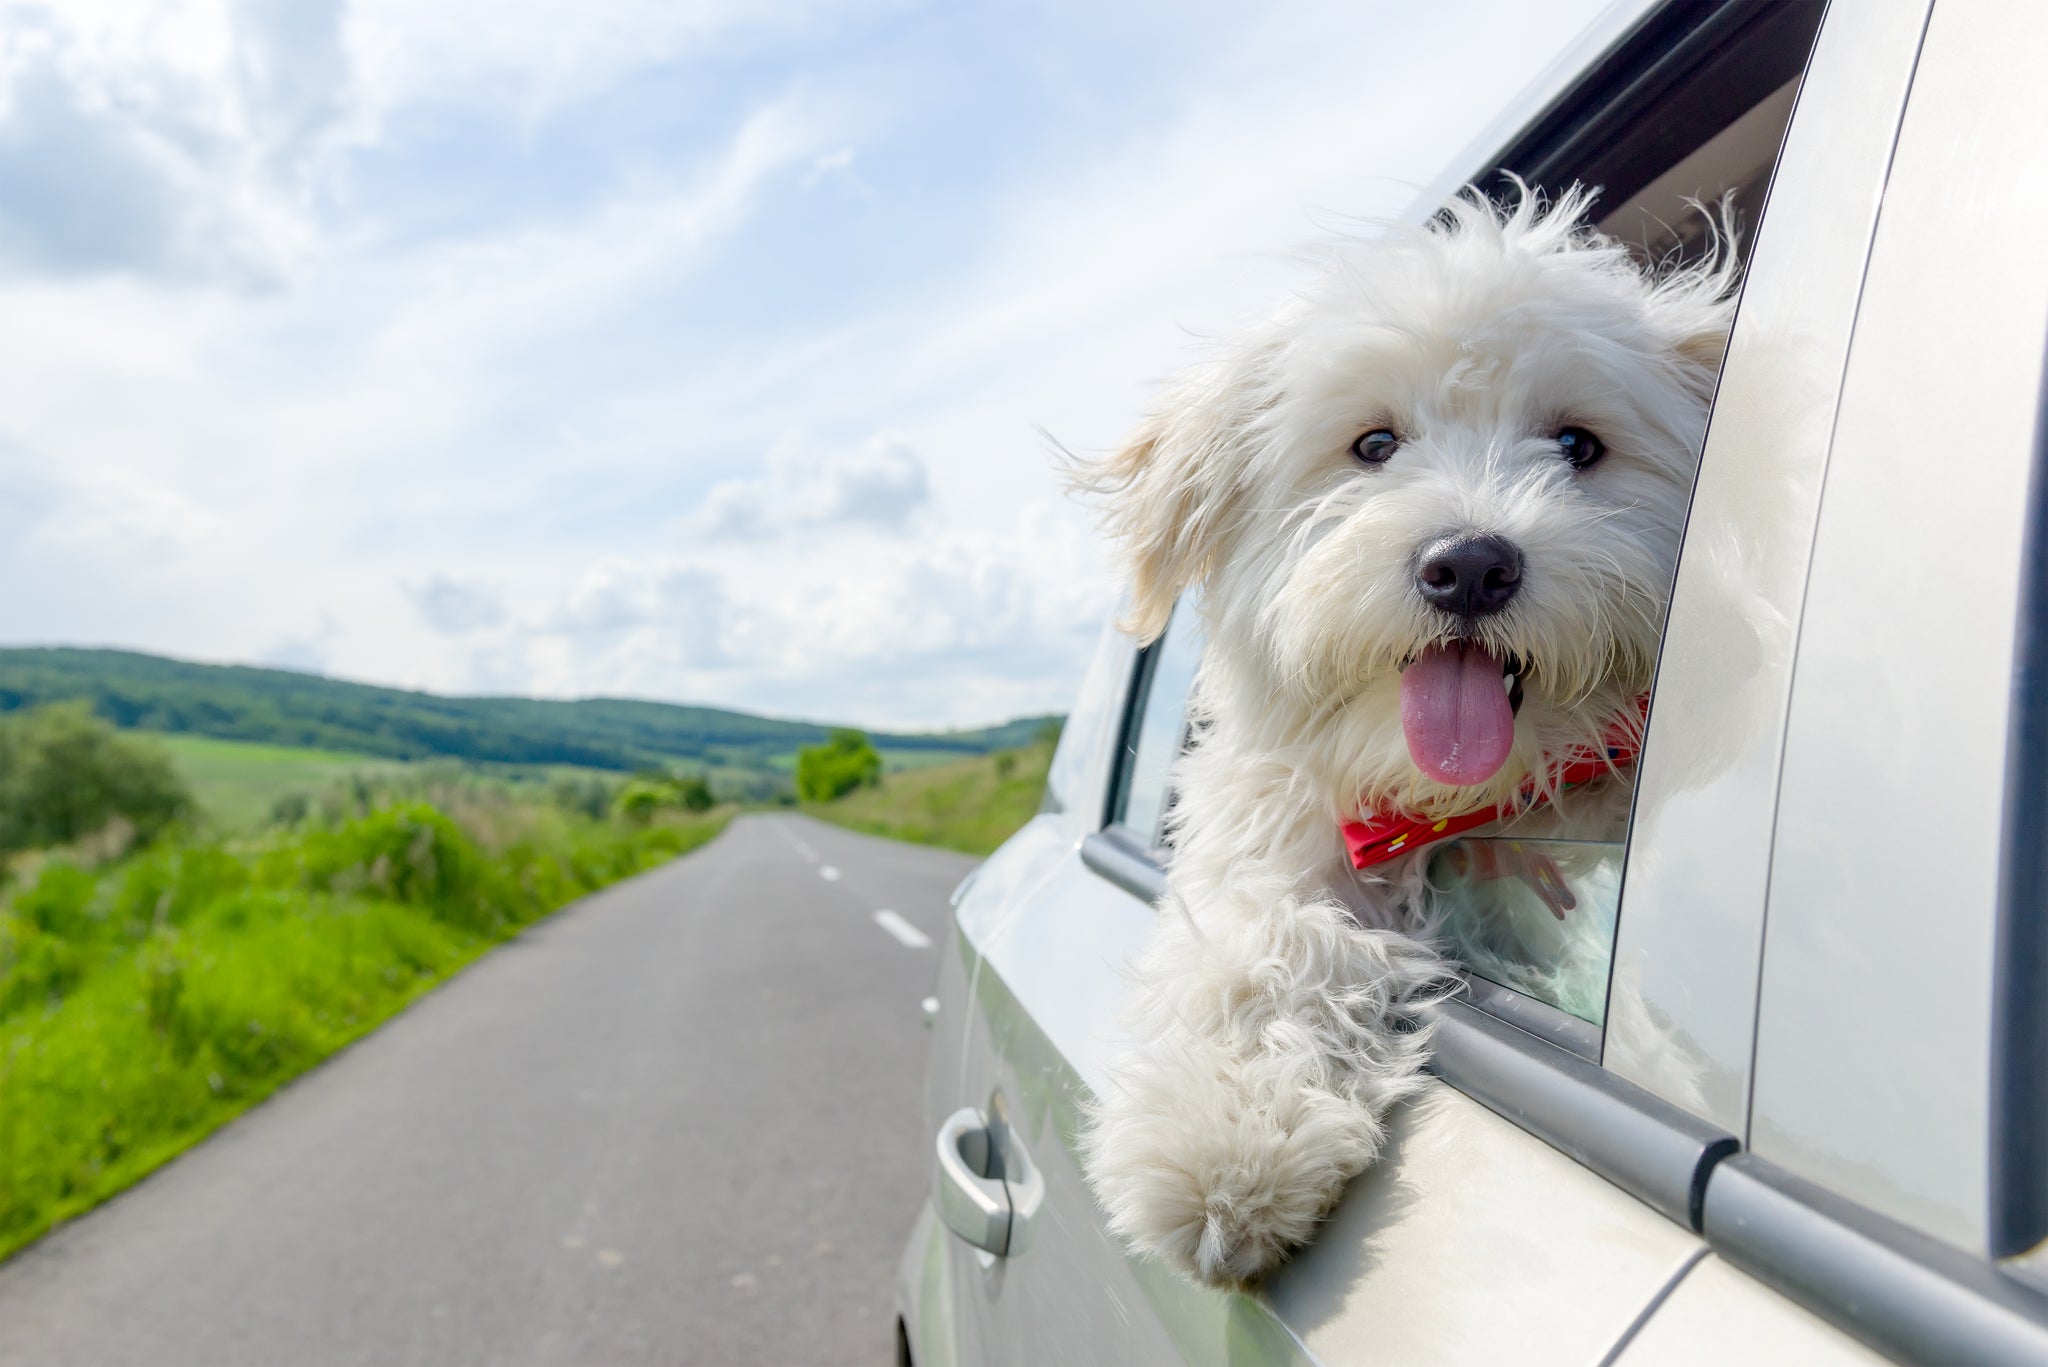 Comment supprimer l'odeur de chien dans une voiture ?